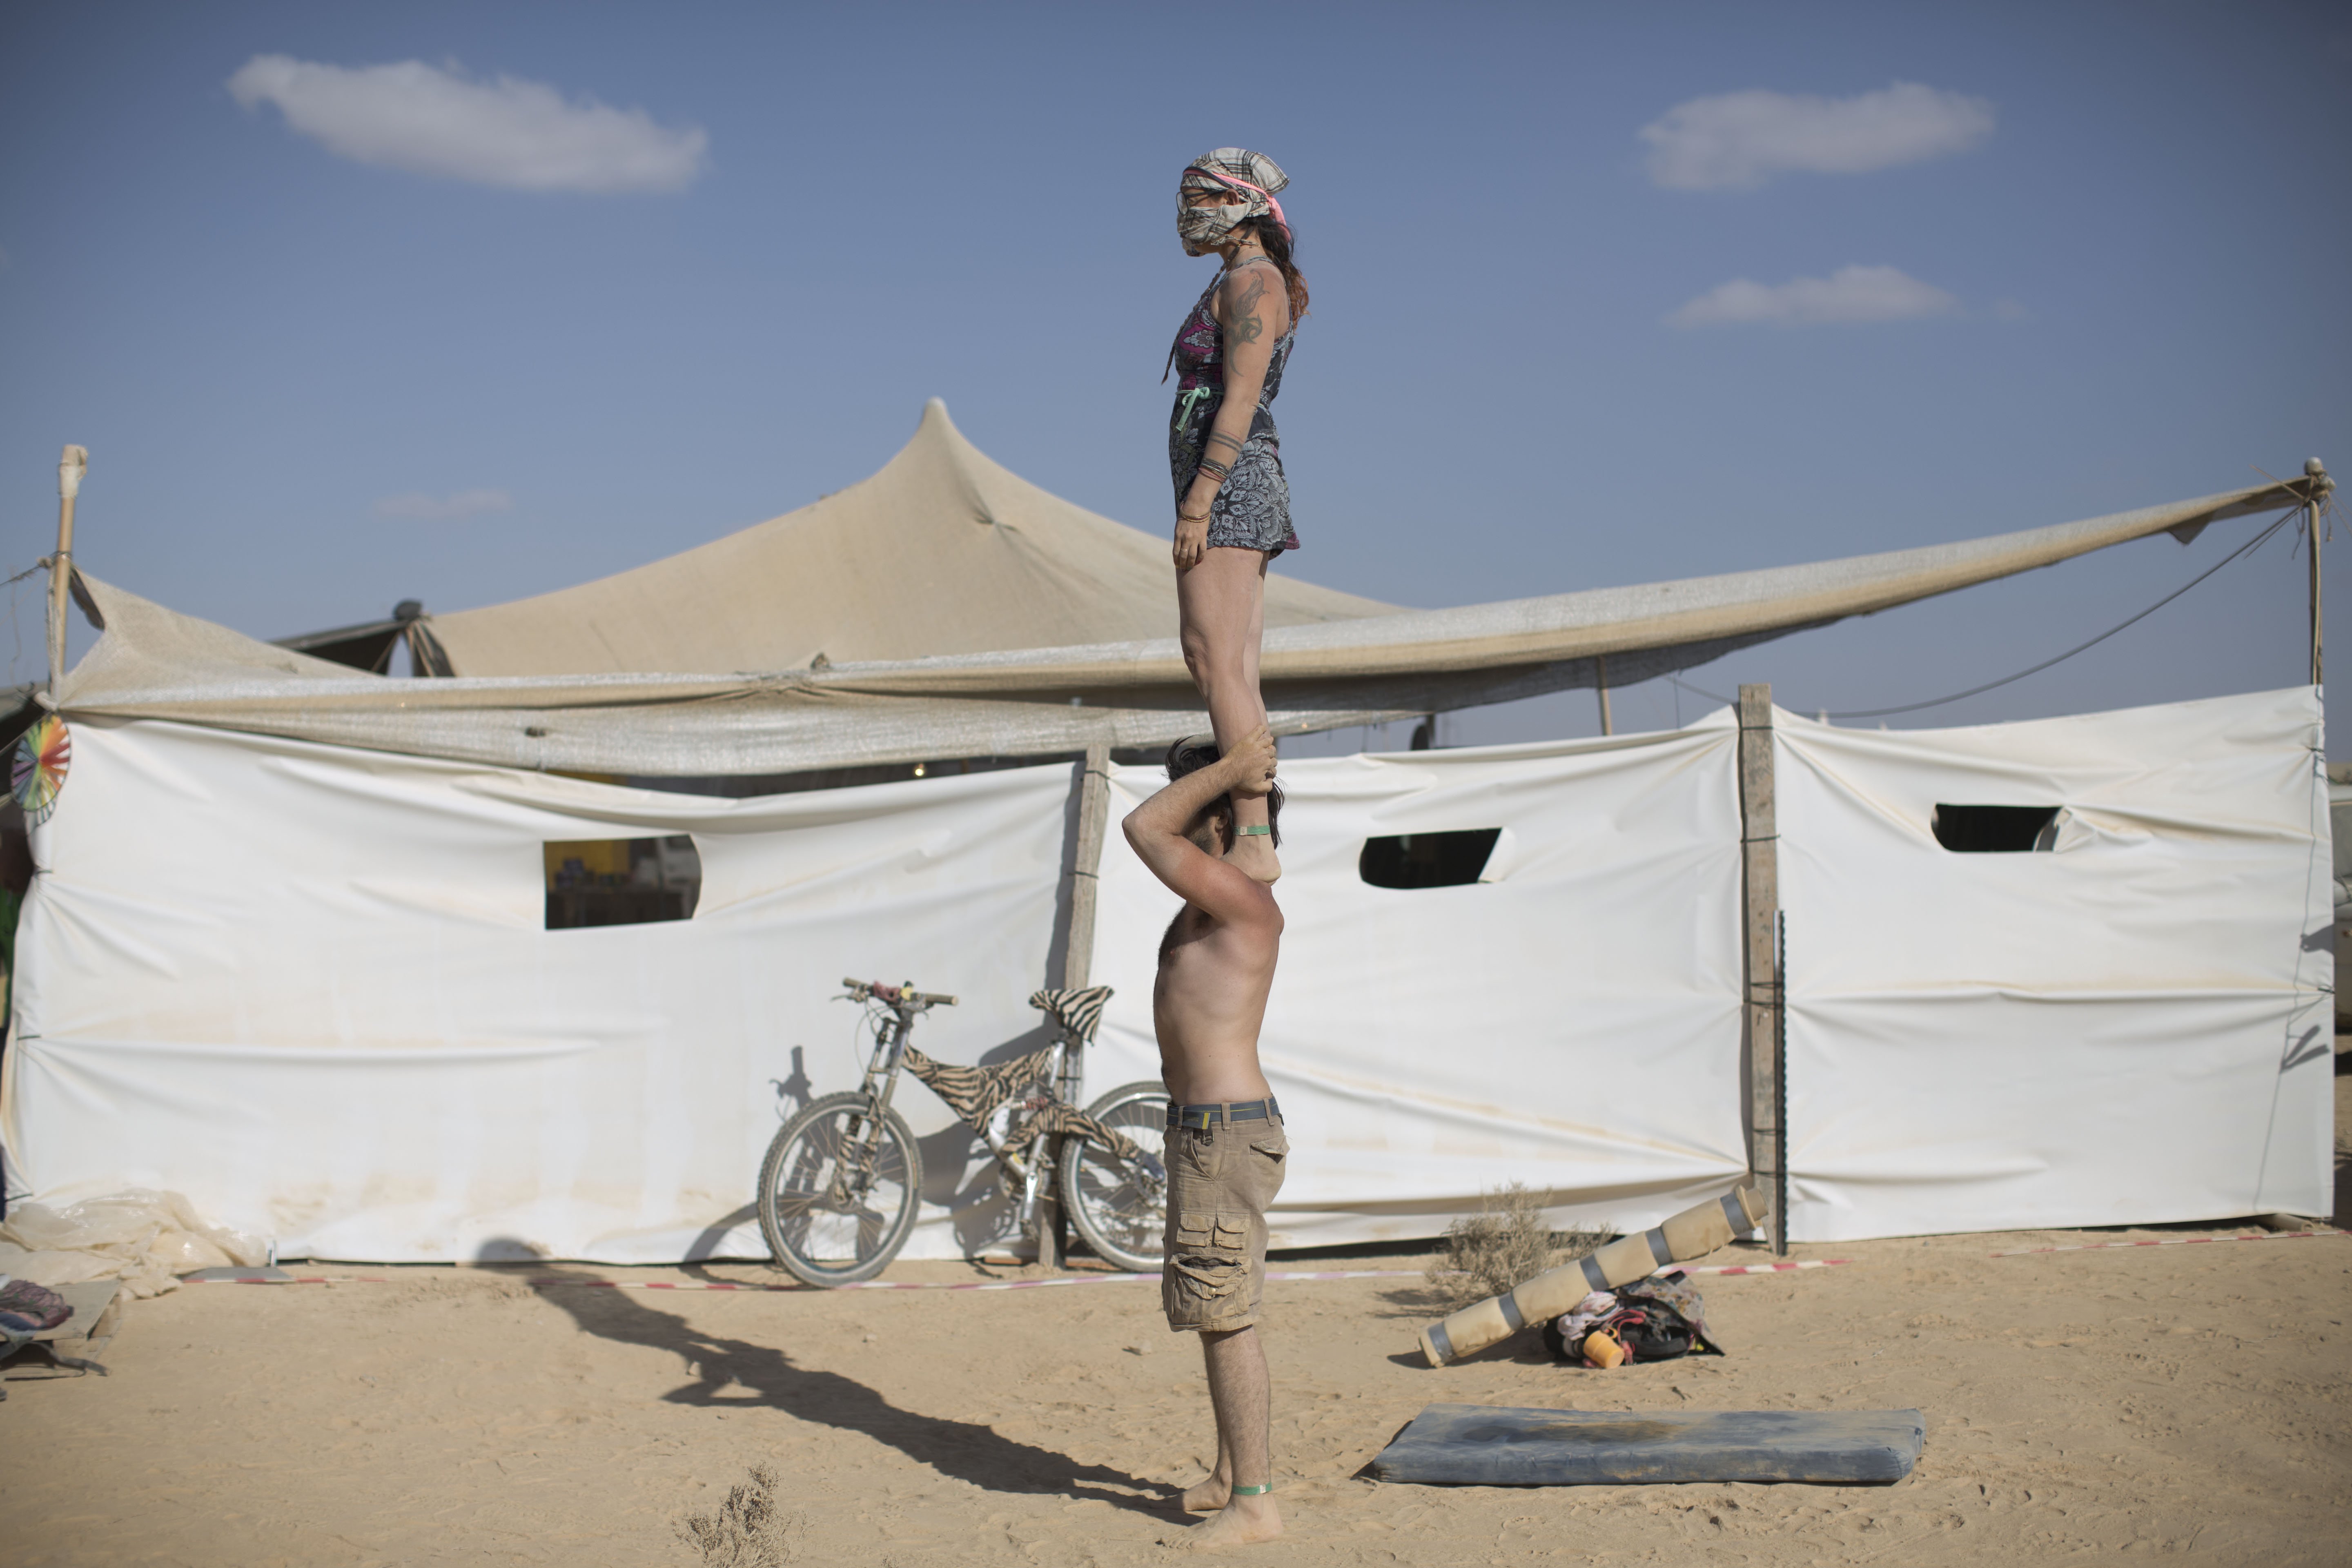 Israeli acrobats perform at Israel's first Midburn festival in the Negev Desert, Israel on June 6, 2014.